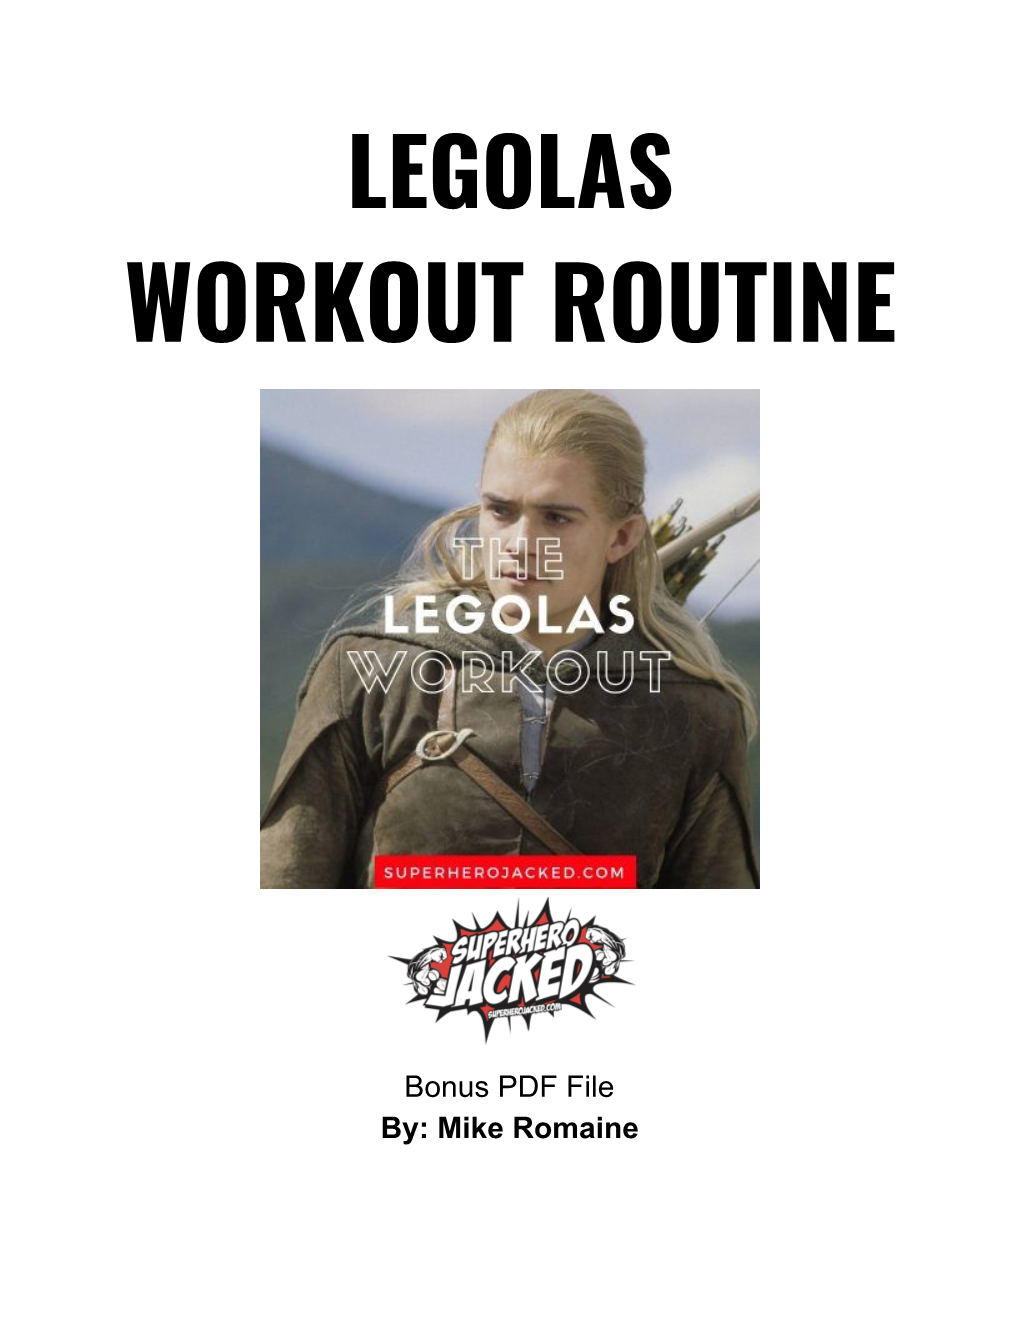 Legolas Workout: Calisthenics Training